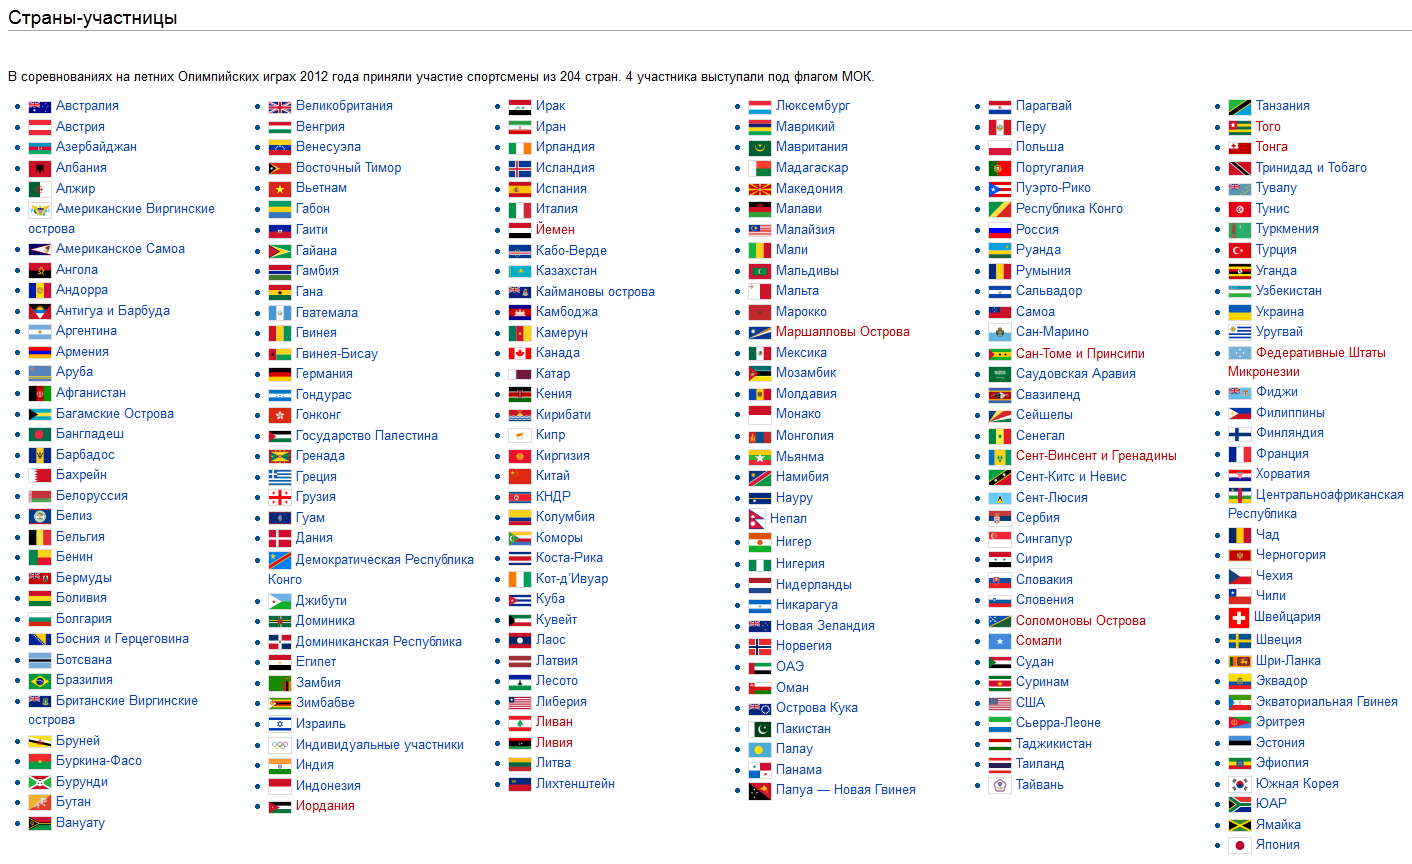 Сколько стран на играх в казани. Список стран.